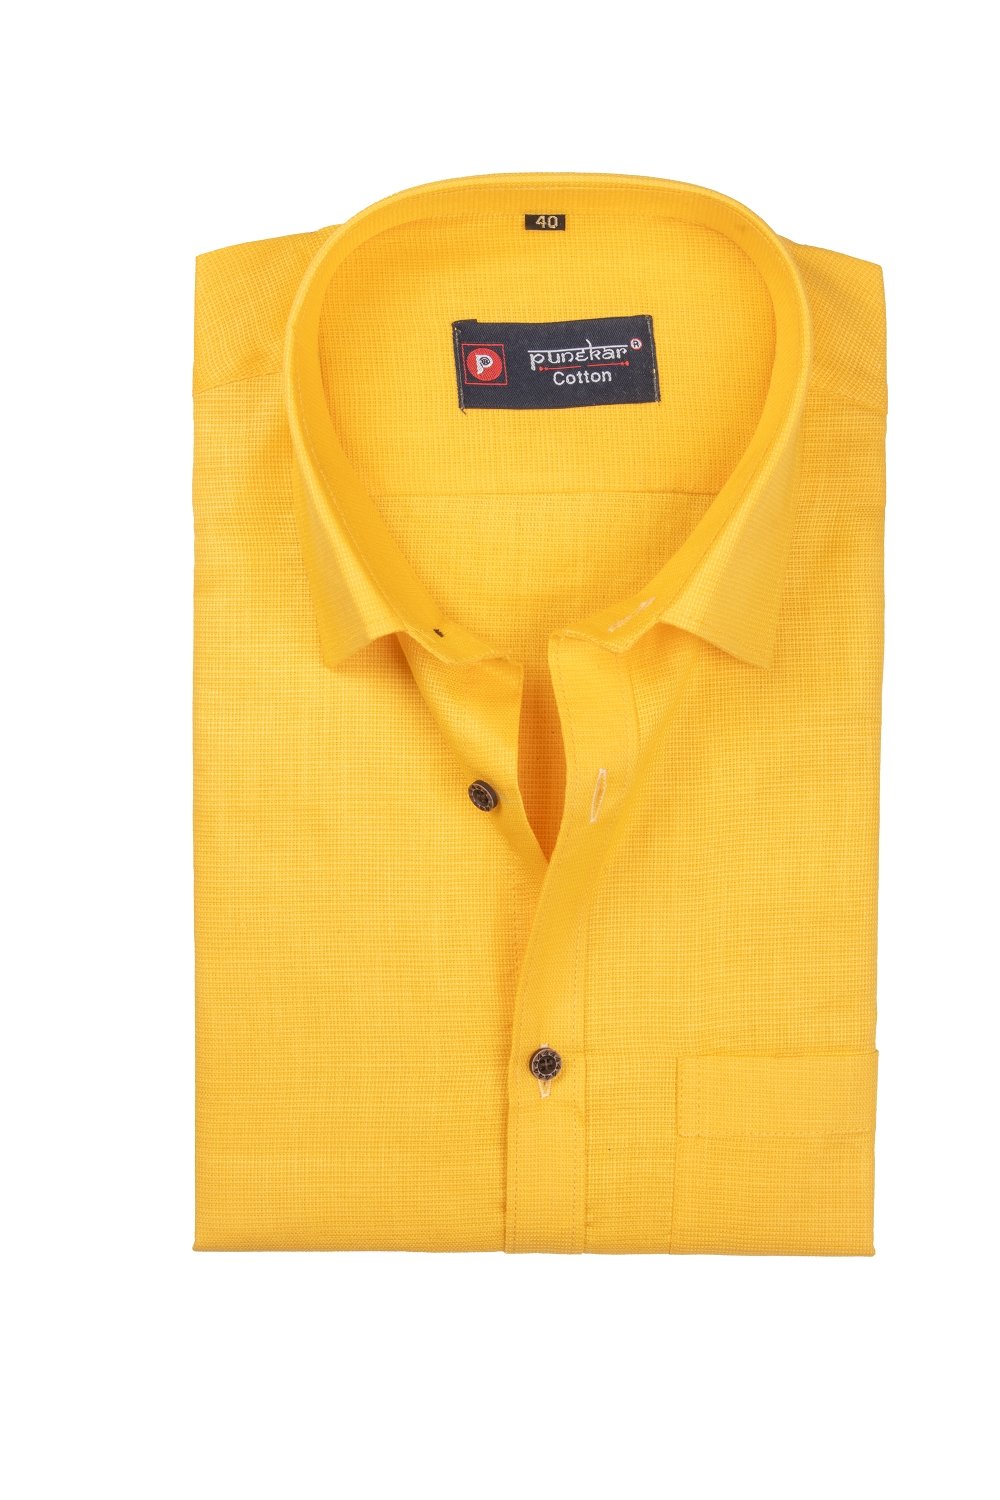 Punekar Cotton Yellow Color Silky Linen Cotton Shirt for Men&